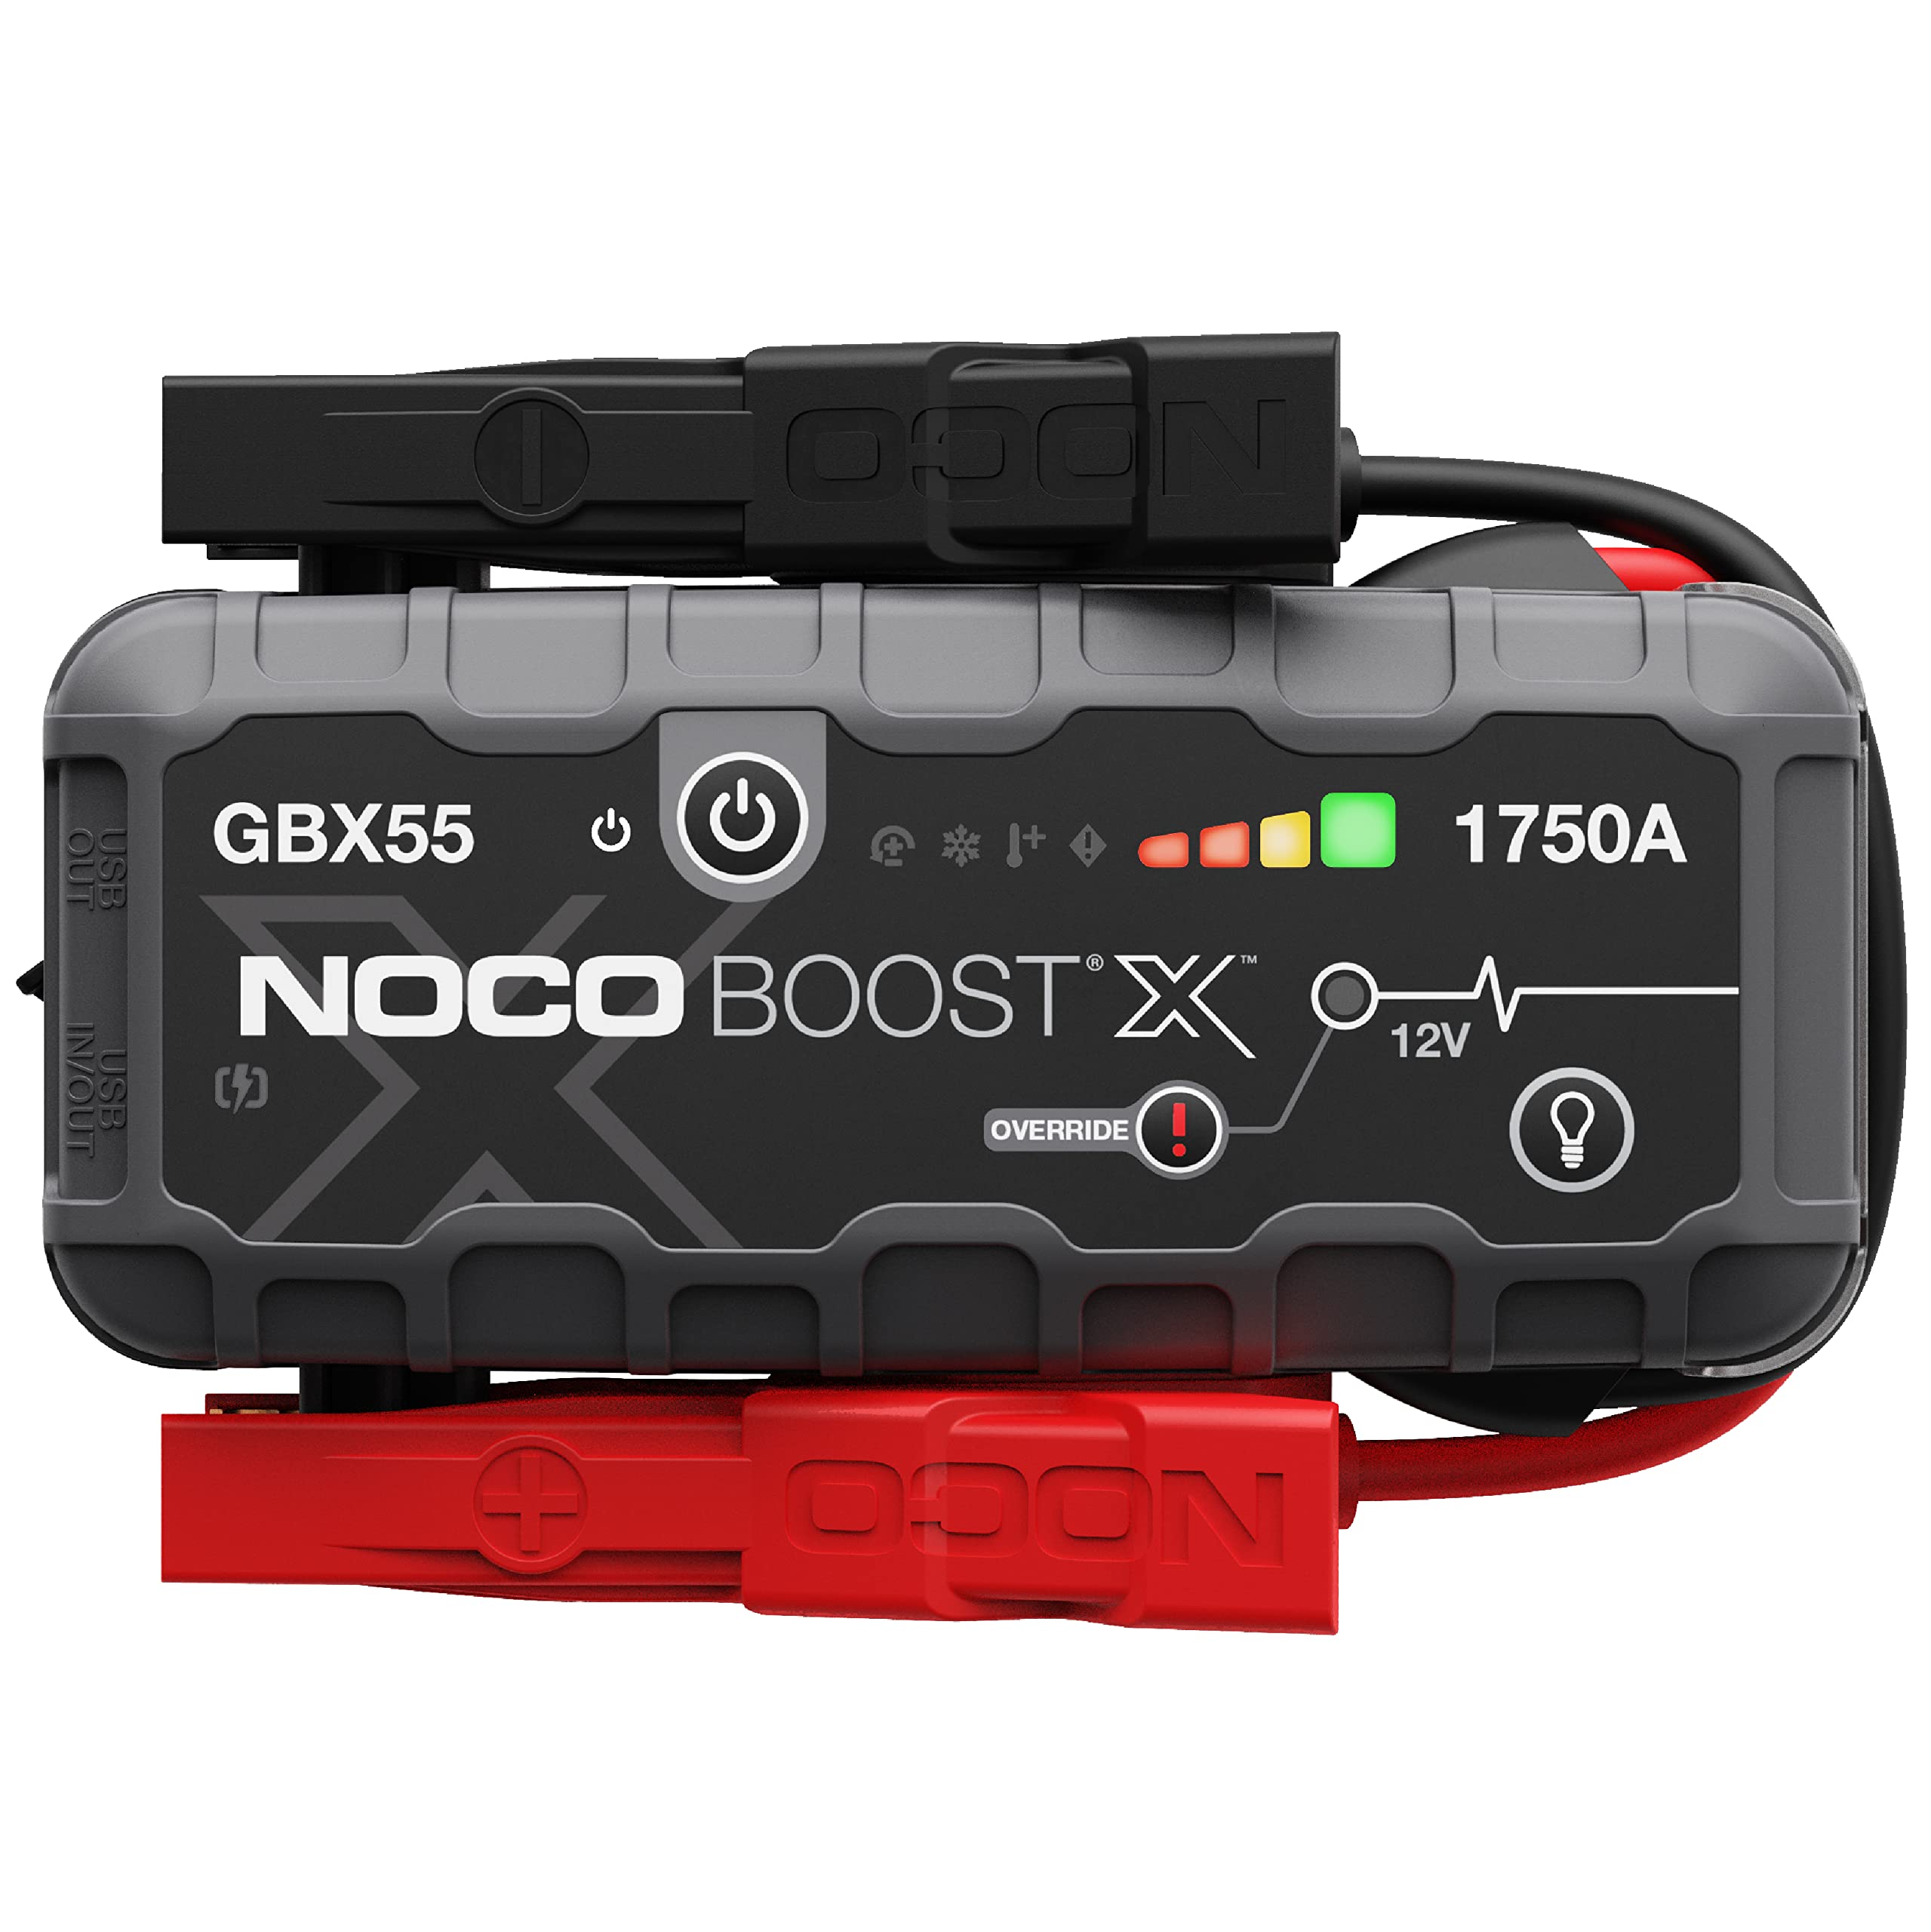  NOCO Boost X GBX55 1750A 12V ウルトラセーフ ポータブル リチウム ジャンプ スターター、カーバッテリー ブースター パック、USB-C パワーバンク充電器、...